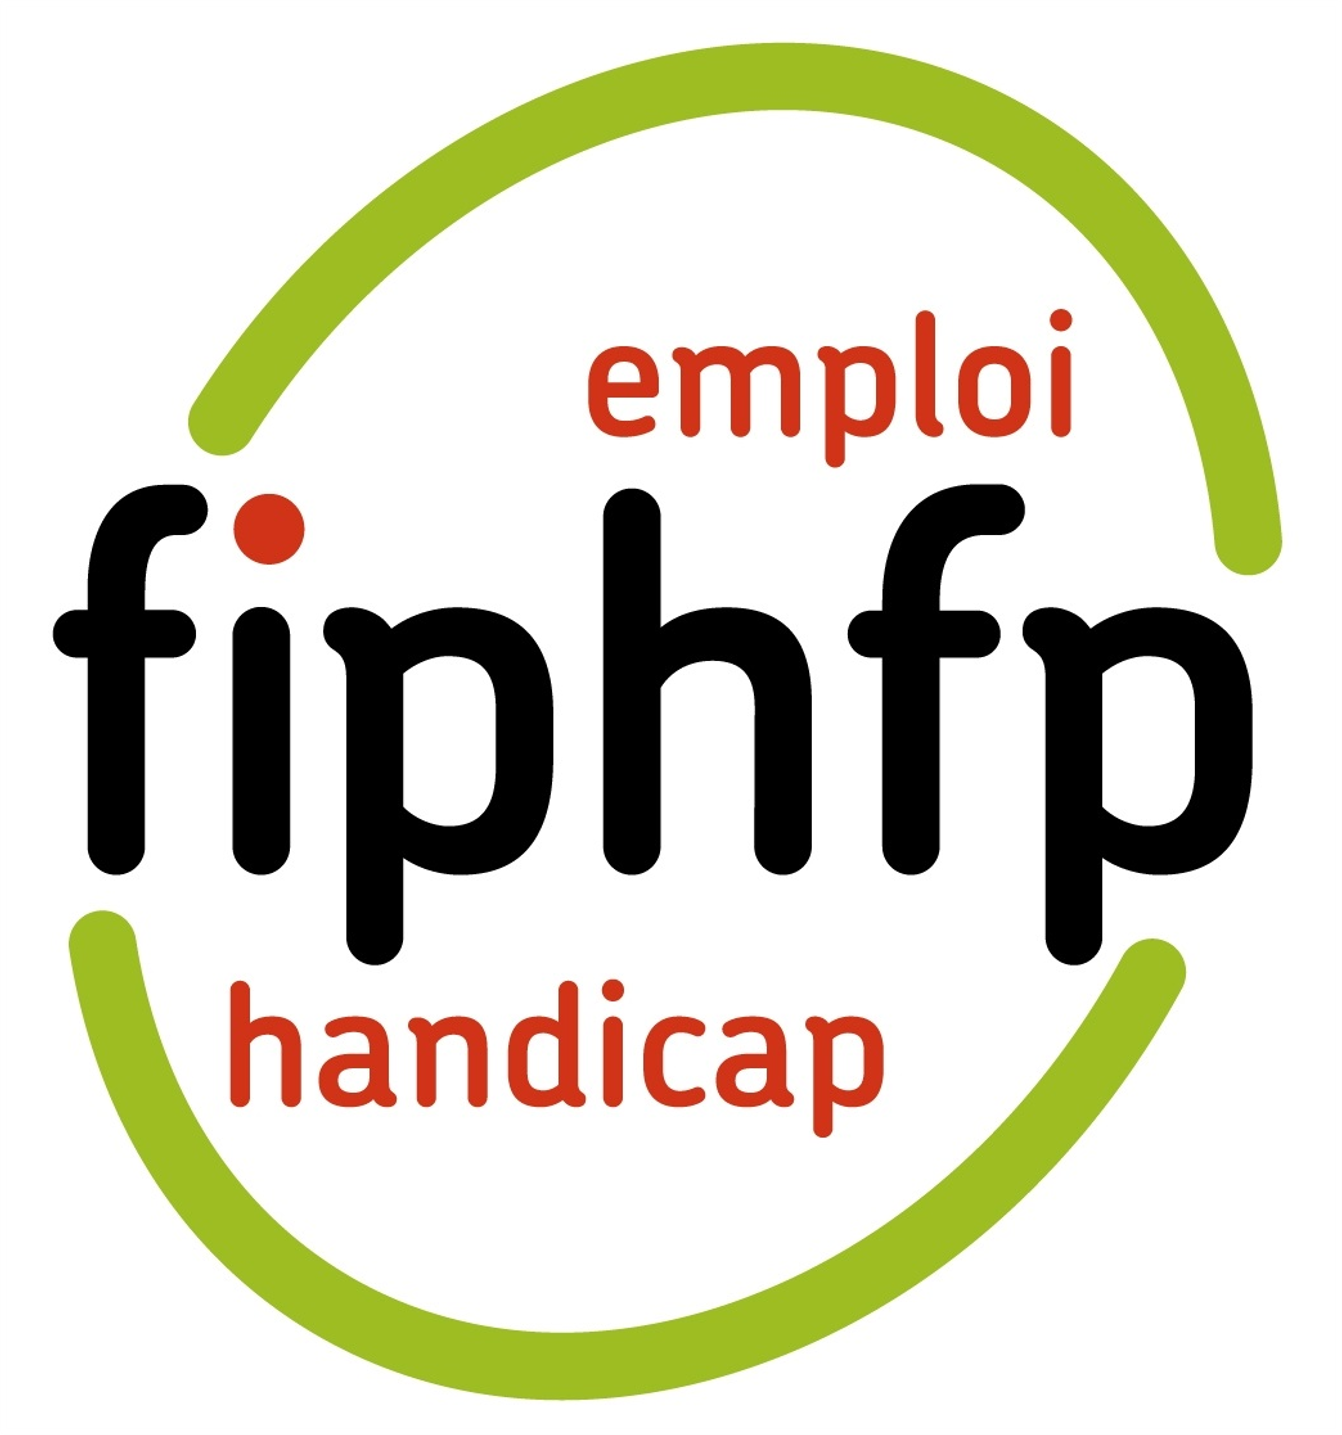 FIPHFP - Emploi handicap - Ensemble pour une fonction publique exemplaire